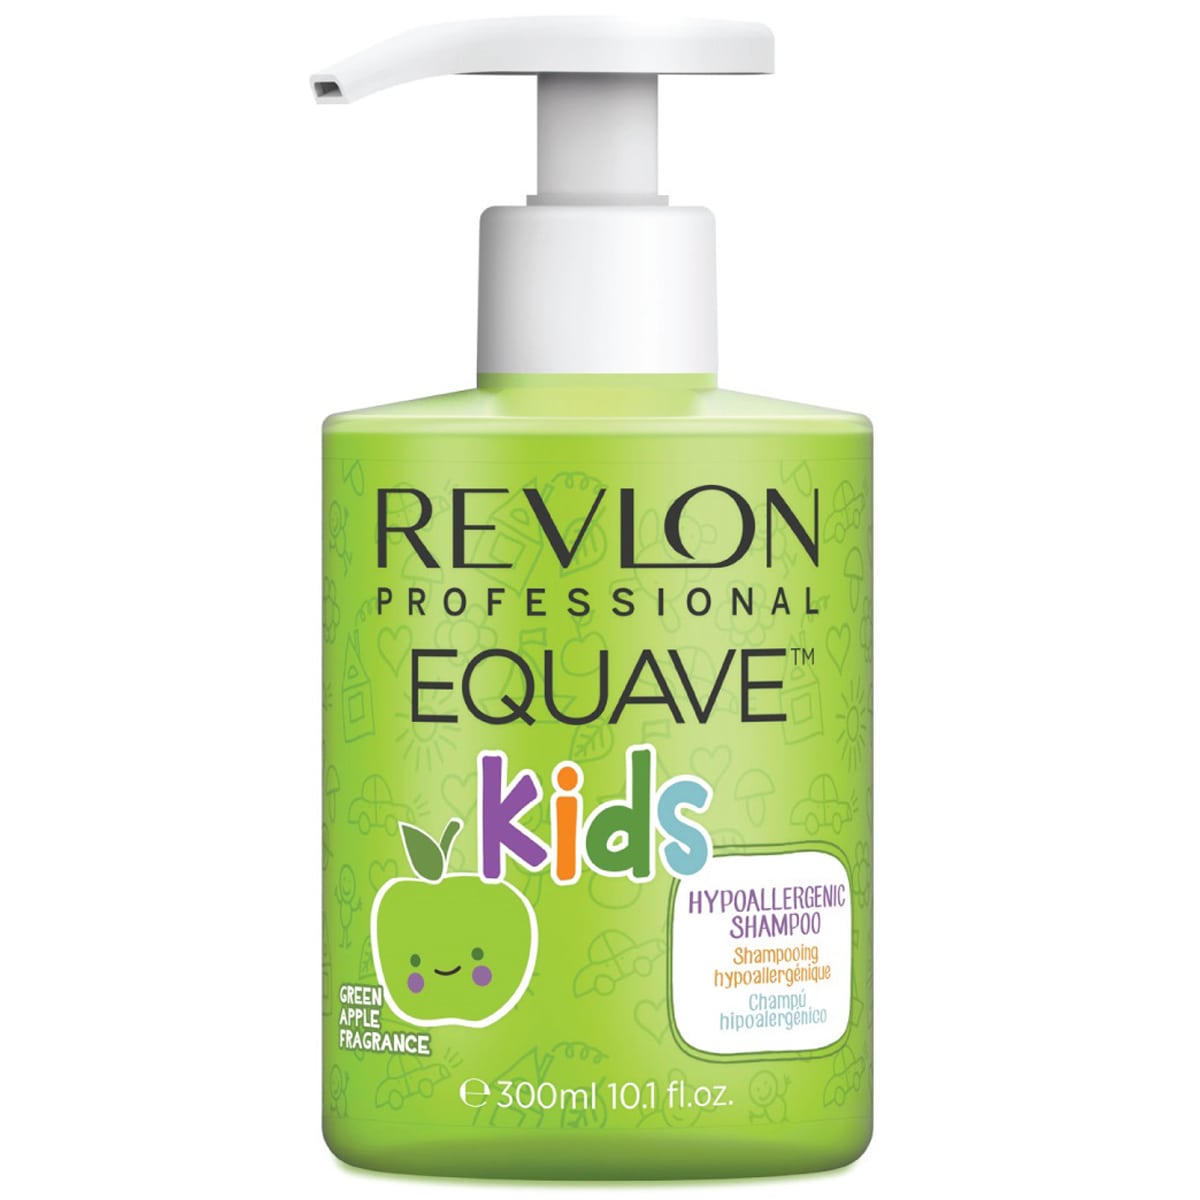 Revlon Professional Шампунь для детей 2 в 1, 300 мл (Revlon Professional, Equave) цена и фото